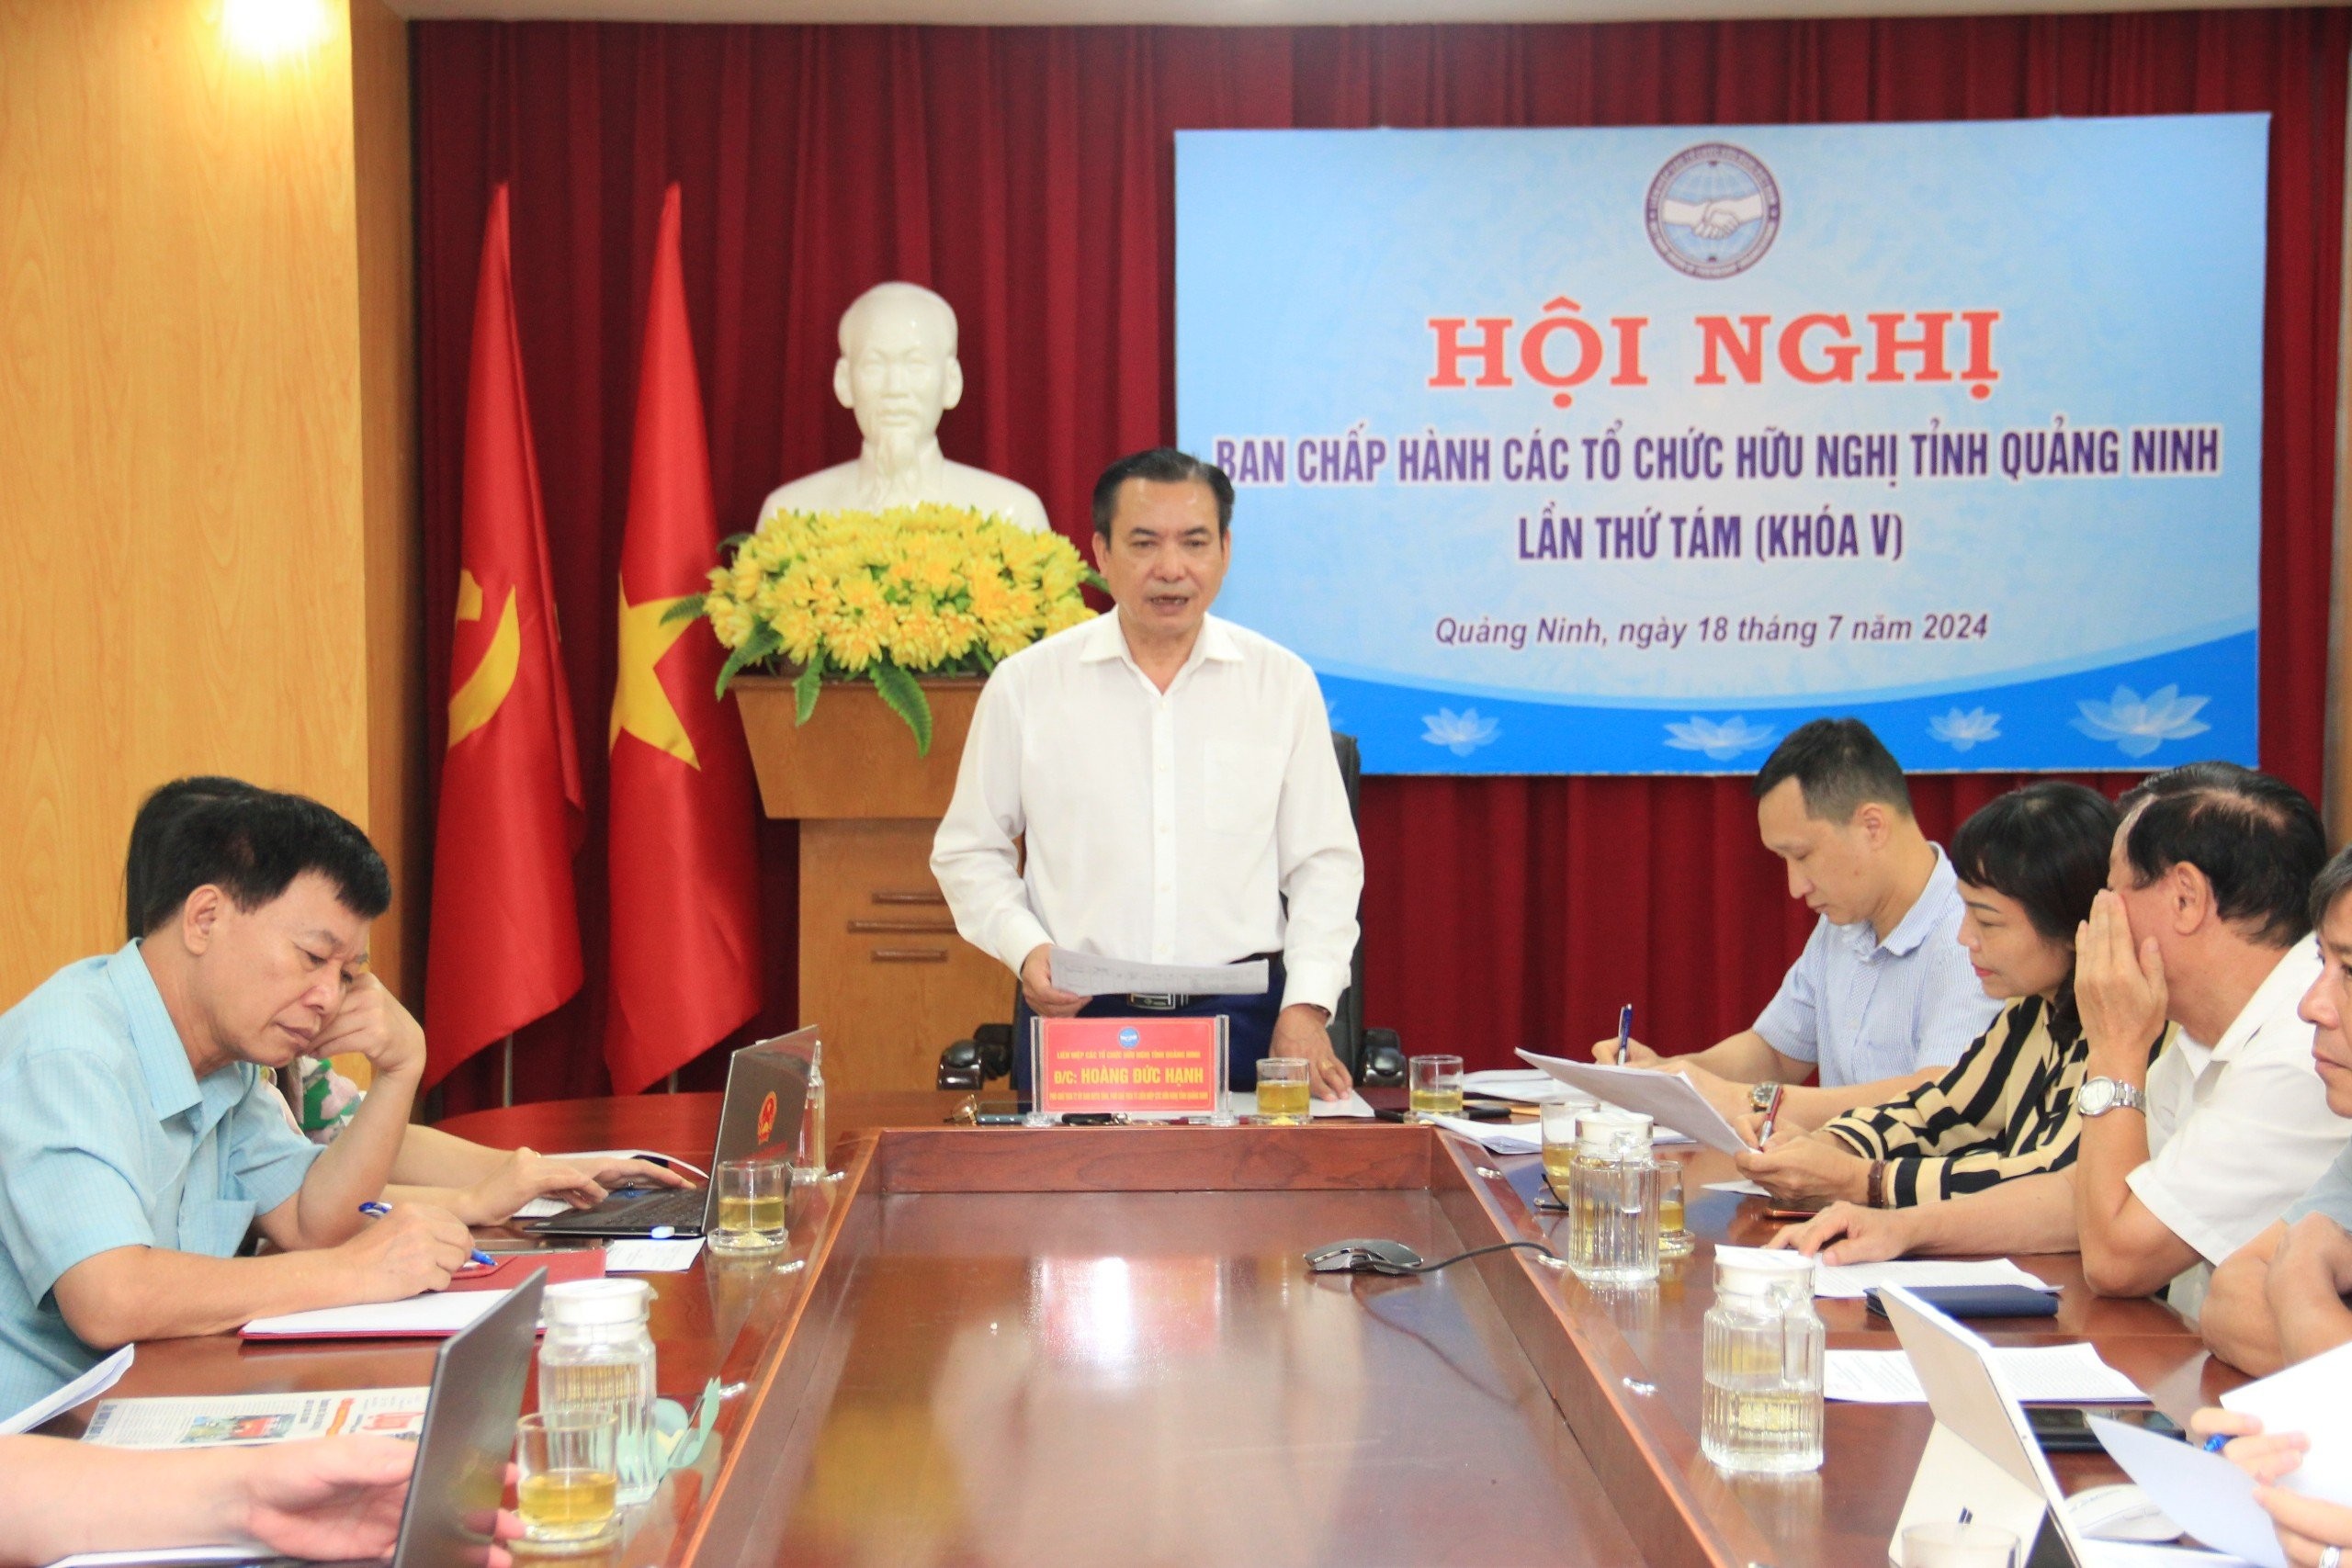 Phó Chủ tịch Thường trực Liên hiệp các tổ chức hữu nghị tỉnh Quảng Ninh Hoàng Đức Hạnh 